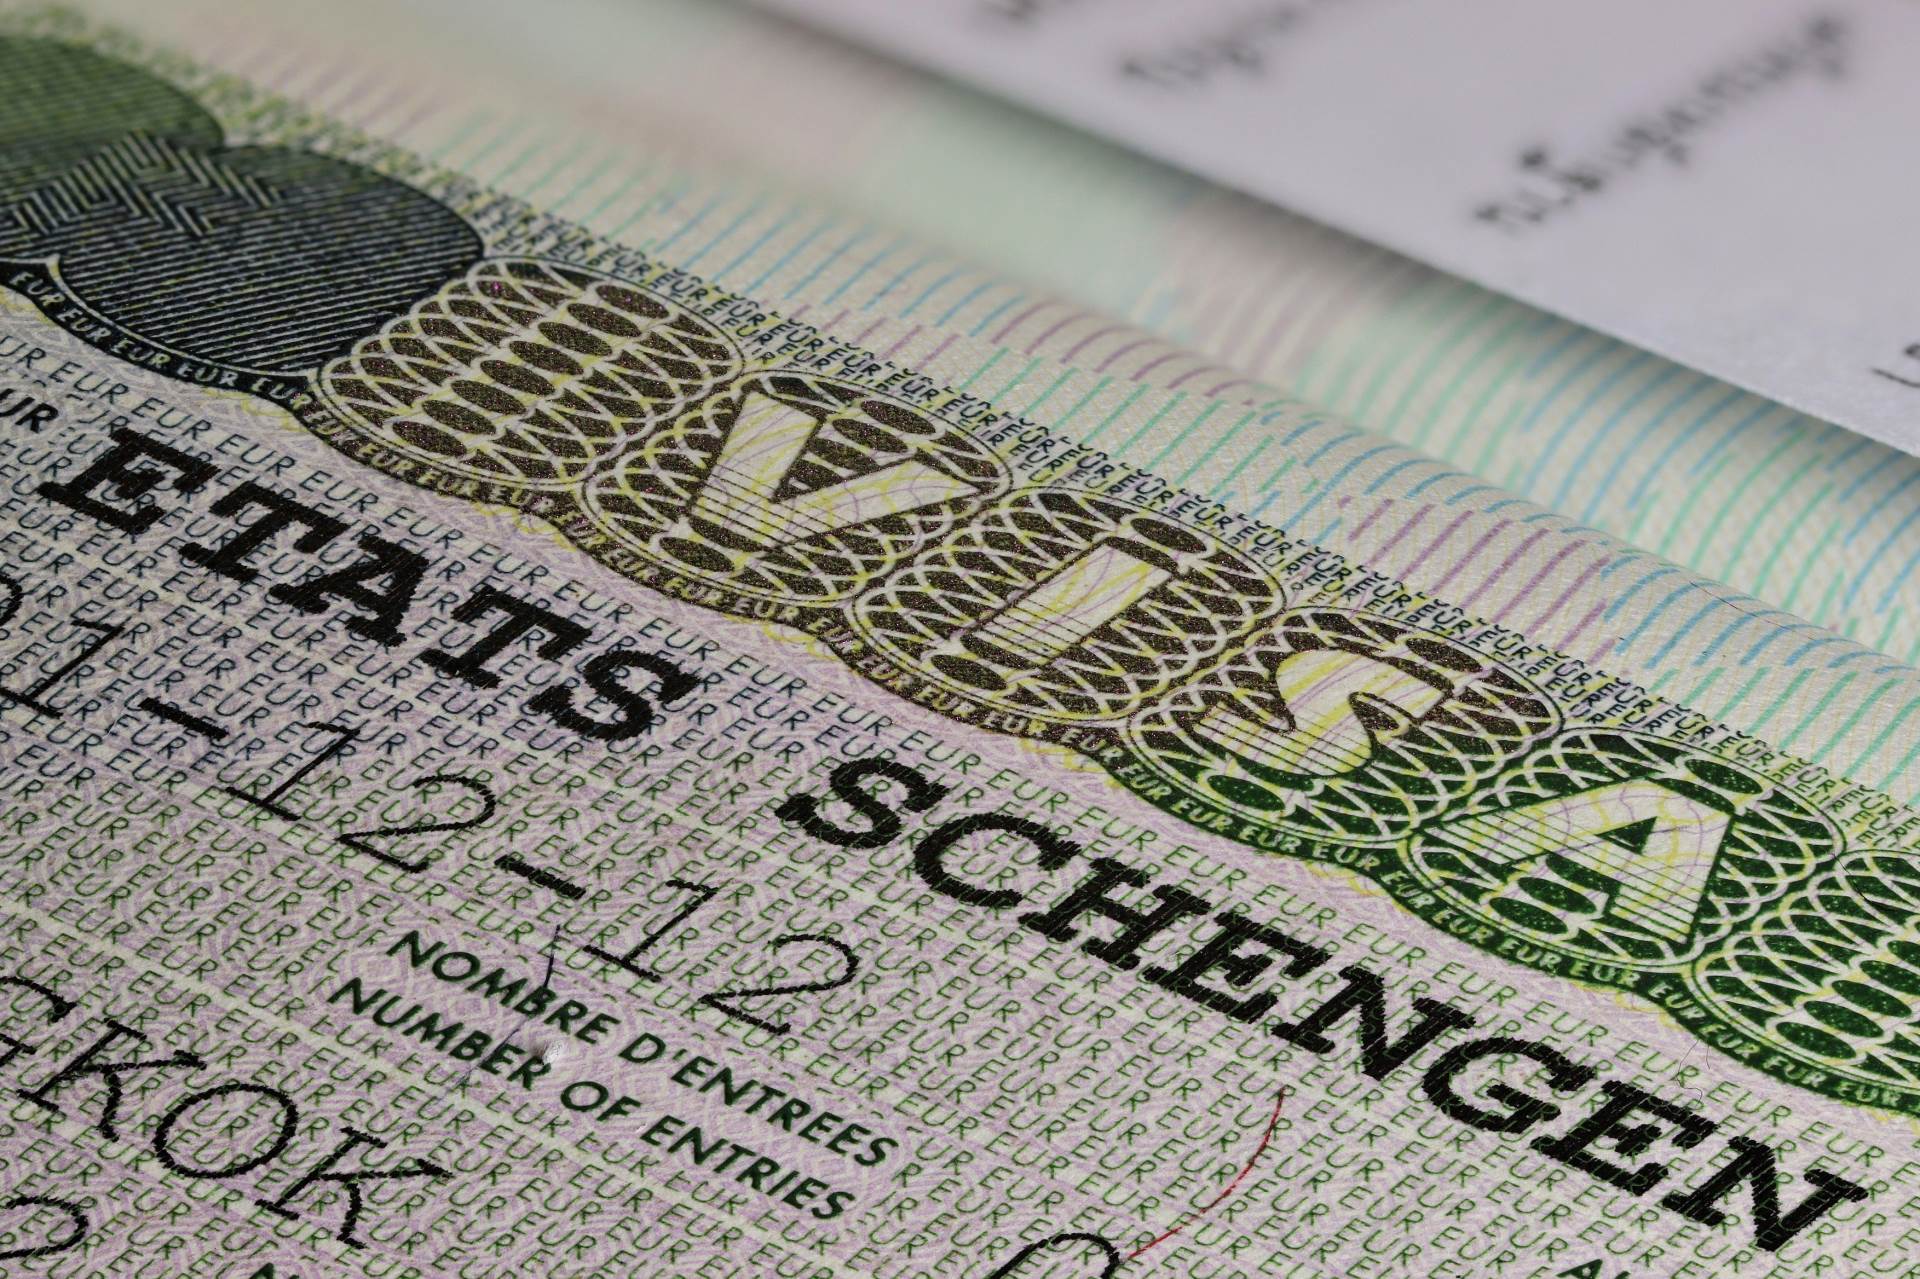  viza za područje Schengena 